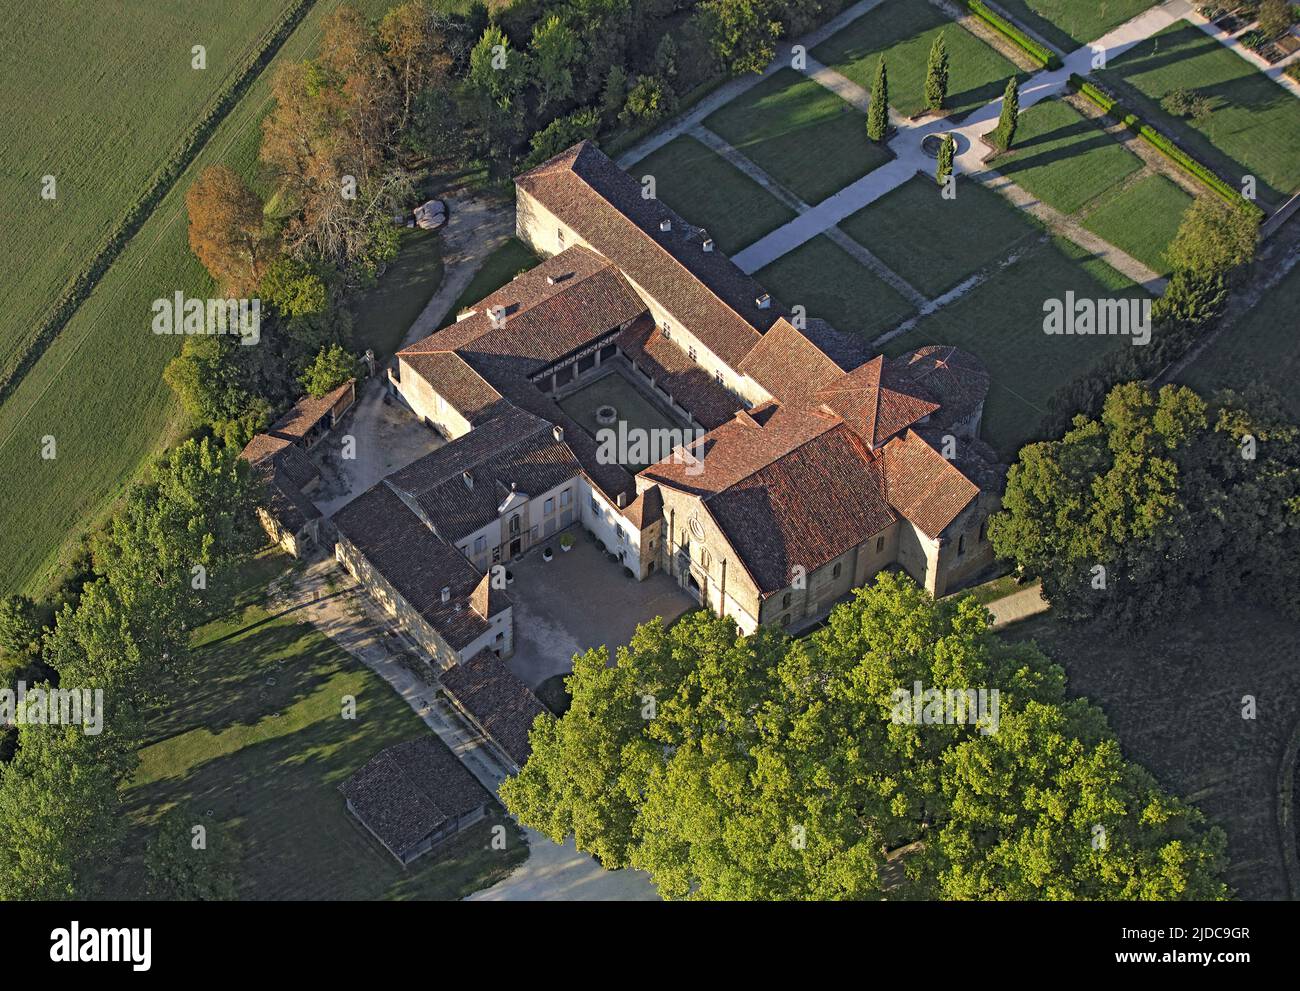 Frankreich, Gers, Valence-sur-Baise, Abtei Flaran, eine ehemalige Zisterzienserabtei (Luftaufnahme) Stockfoto